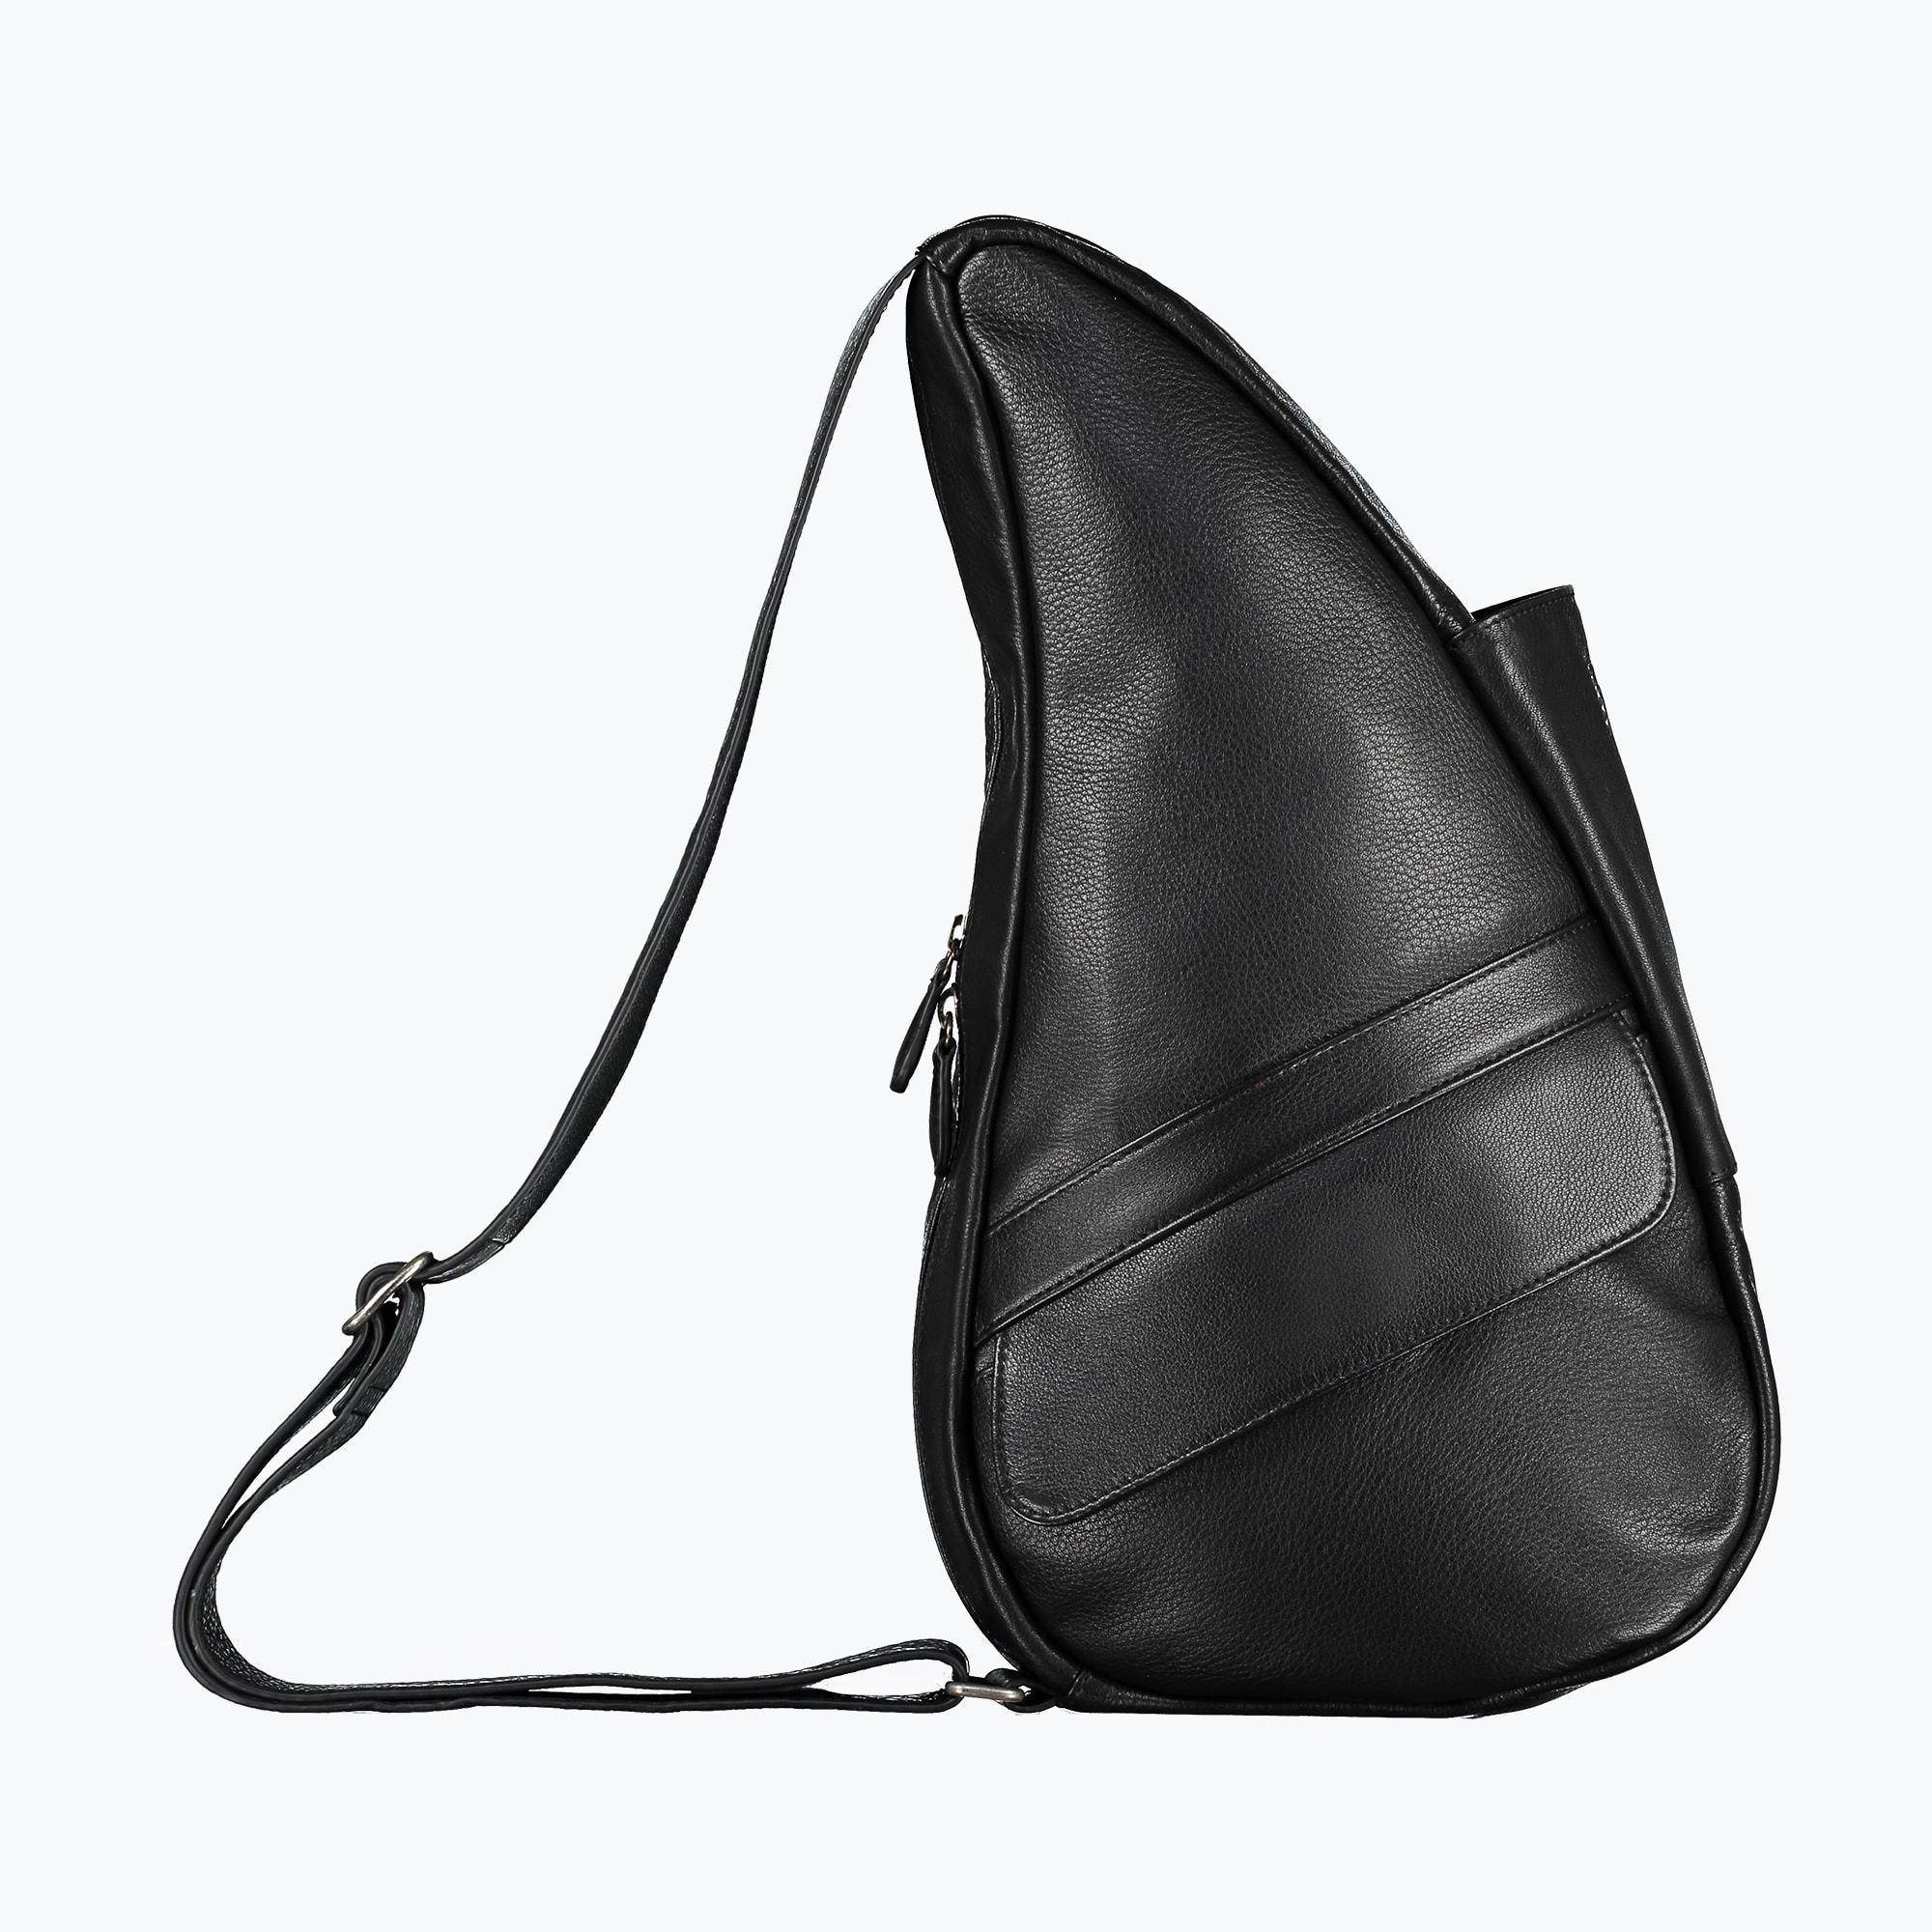 Healthy Back Bag Leather Healthy Back Bag S Black